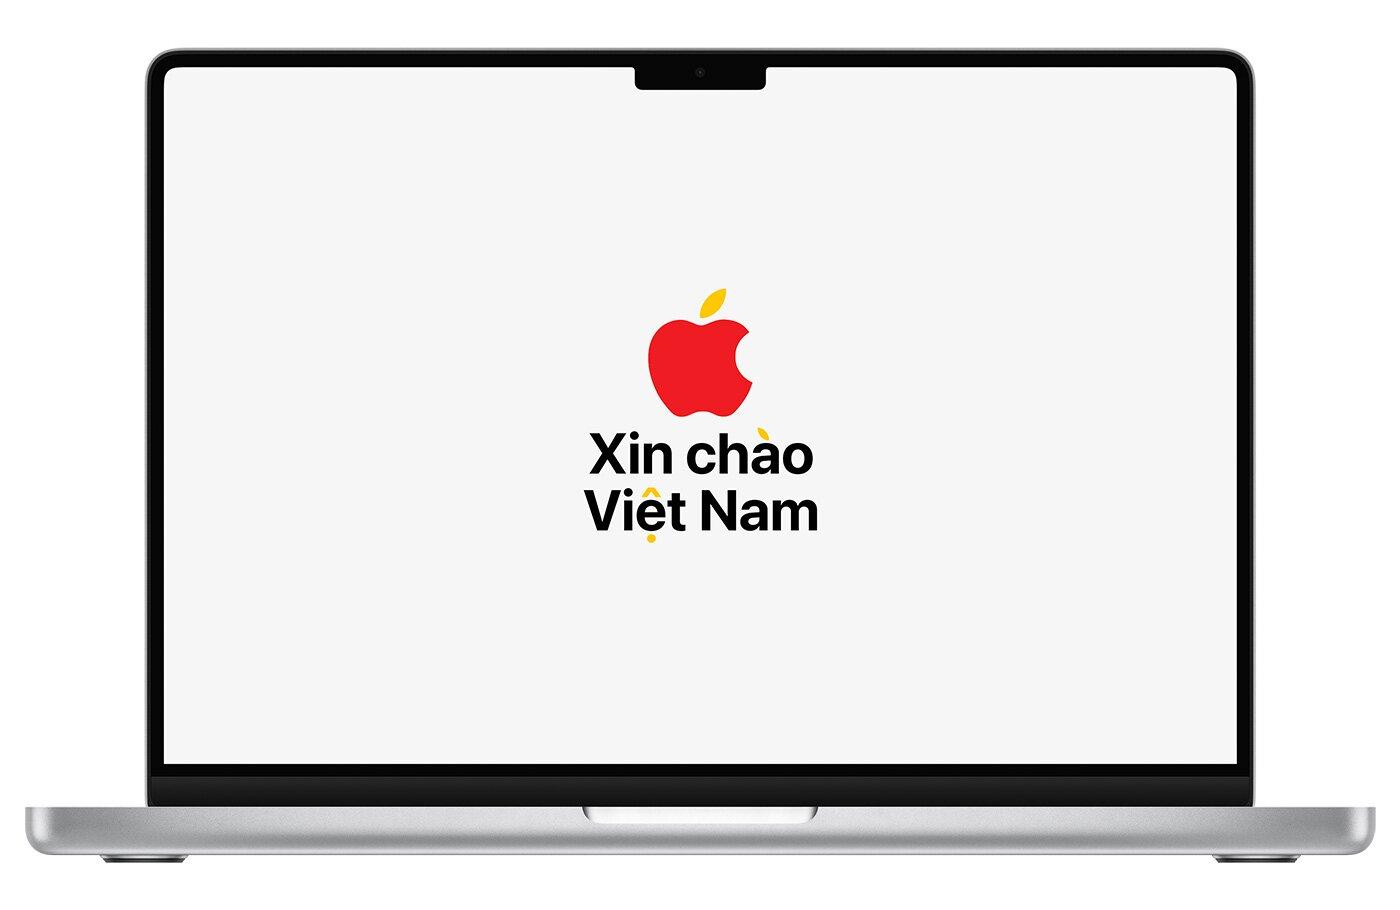 Gần đây, động thái gia nhập thị trường nội địa của Apple cho thấy họ đang bắt đầu quan tâm và đánh giá Việt Nam là một trong những thị trường tiềm năng trong nhiều năm tới (Ảnh: Internet)